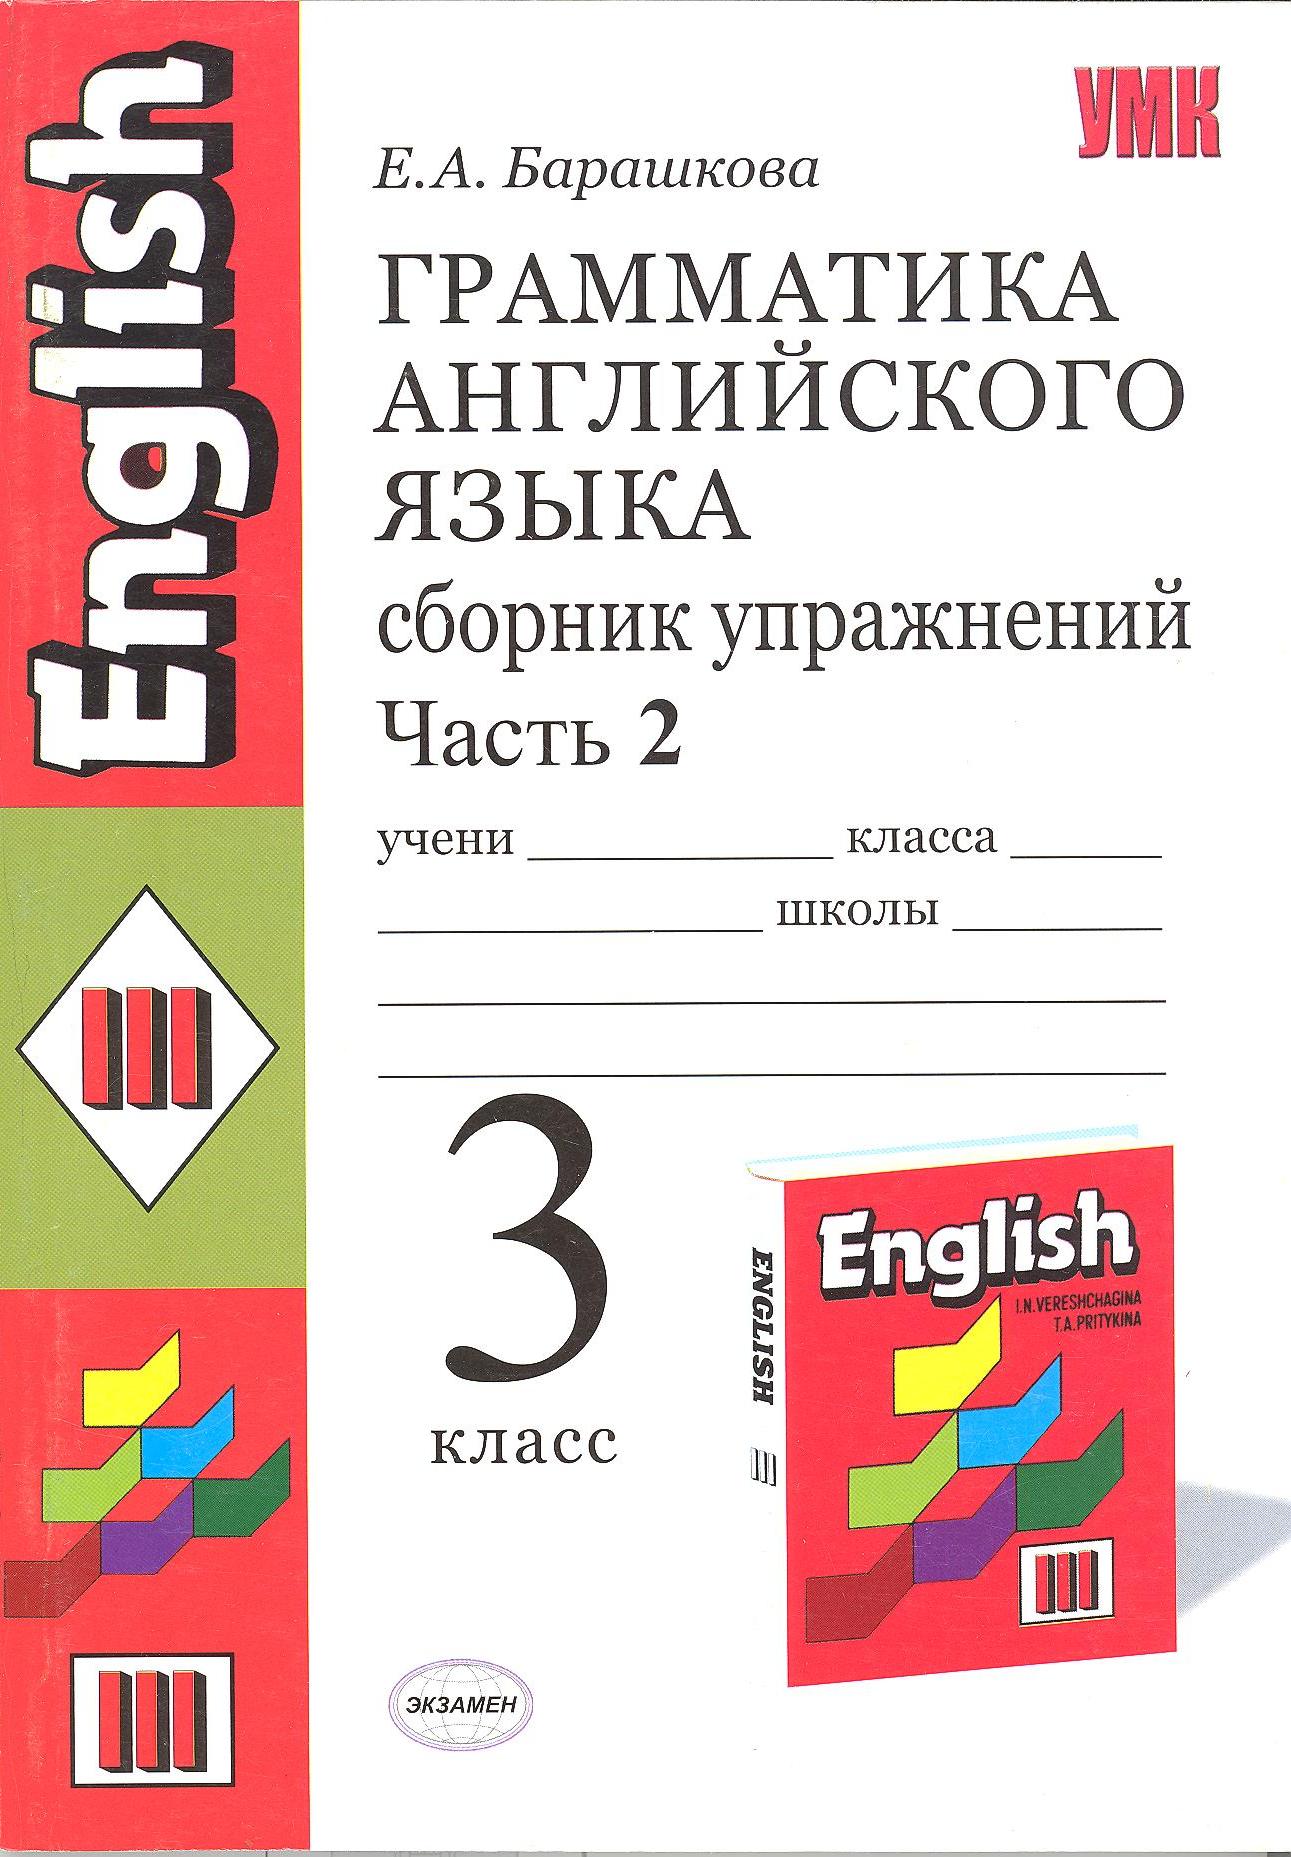 Enjoy english 5-6 классы биболетова м.з грамматика английского языка книга для родителей онлайн